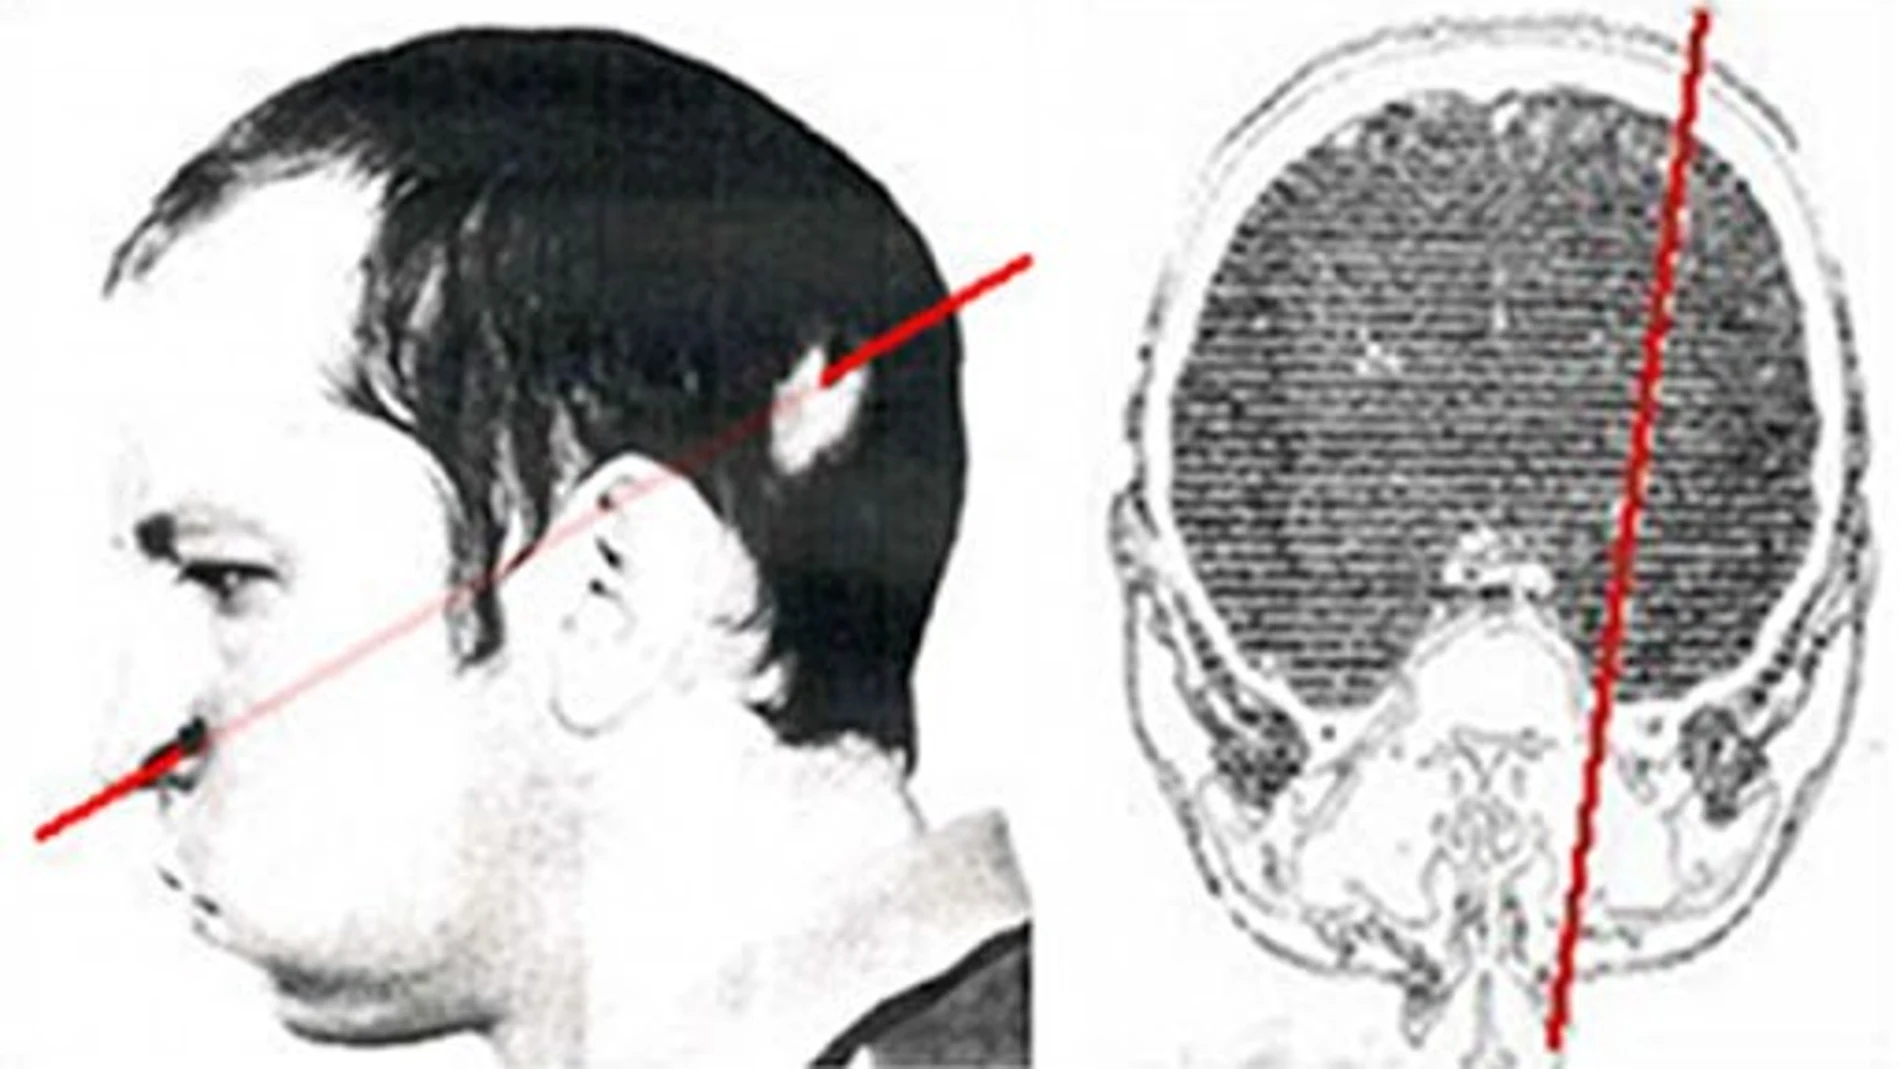 Trayectoria que siguió el haz de partículas al atravesar el cráneo de Busgorski